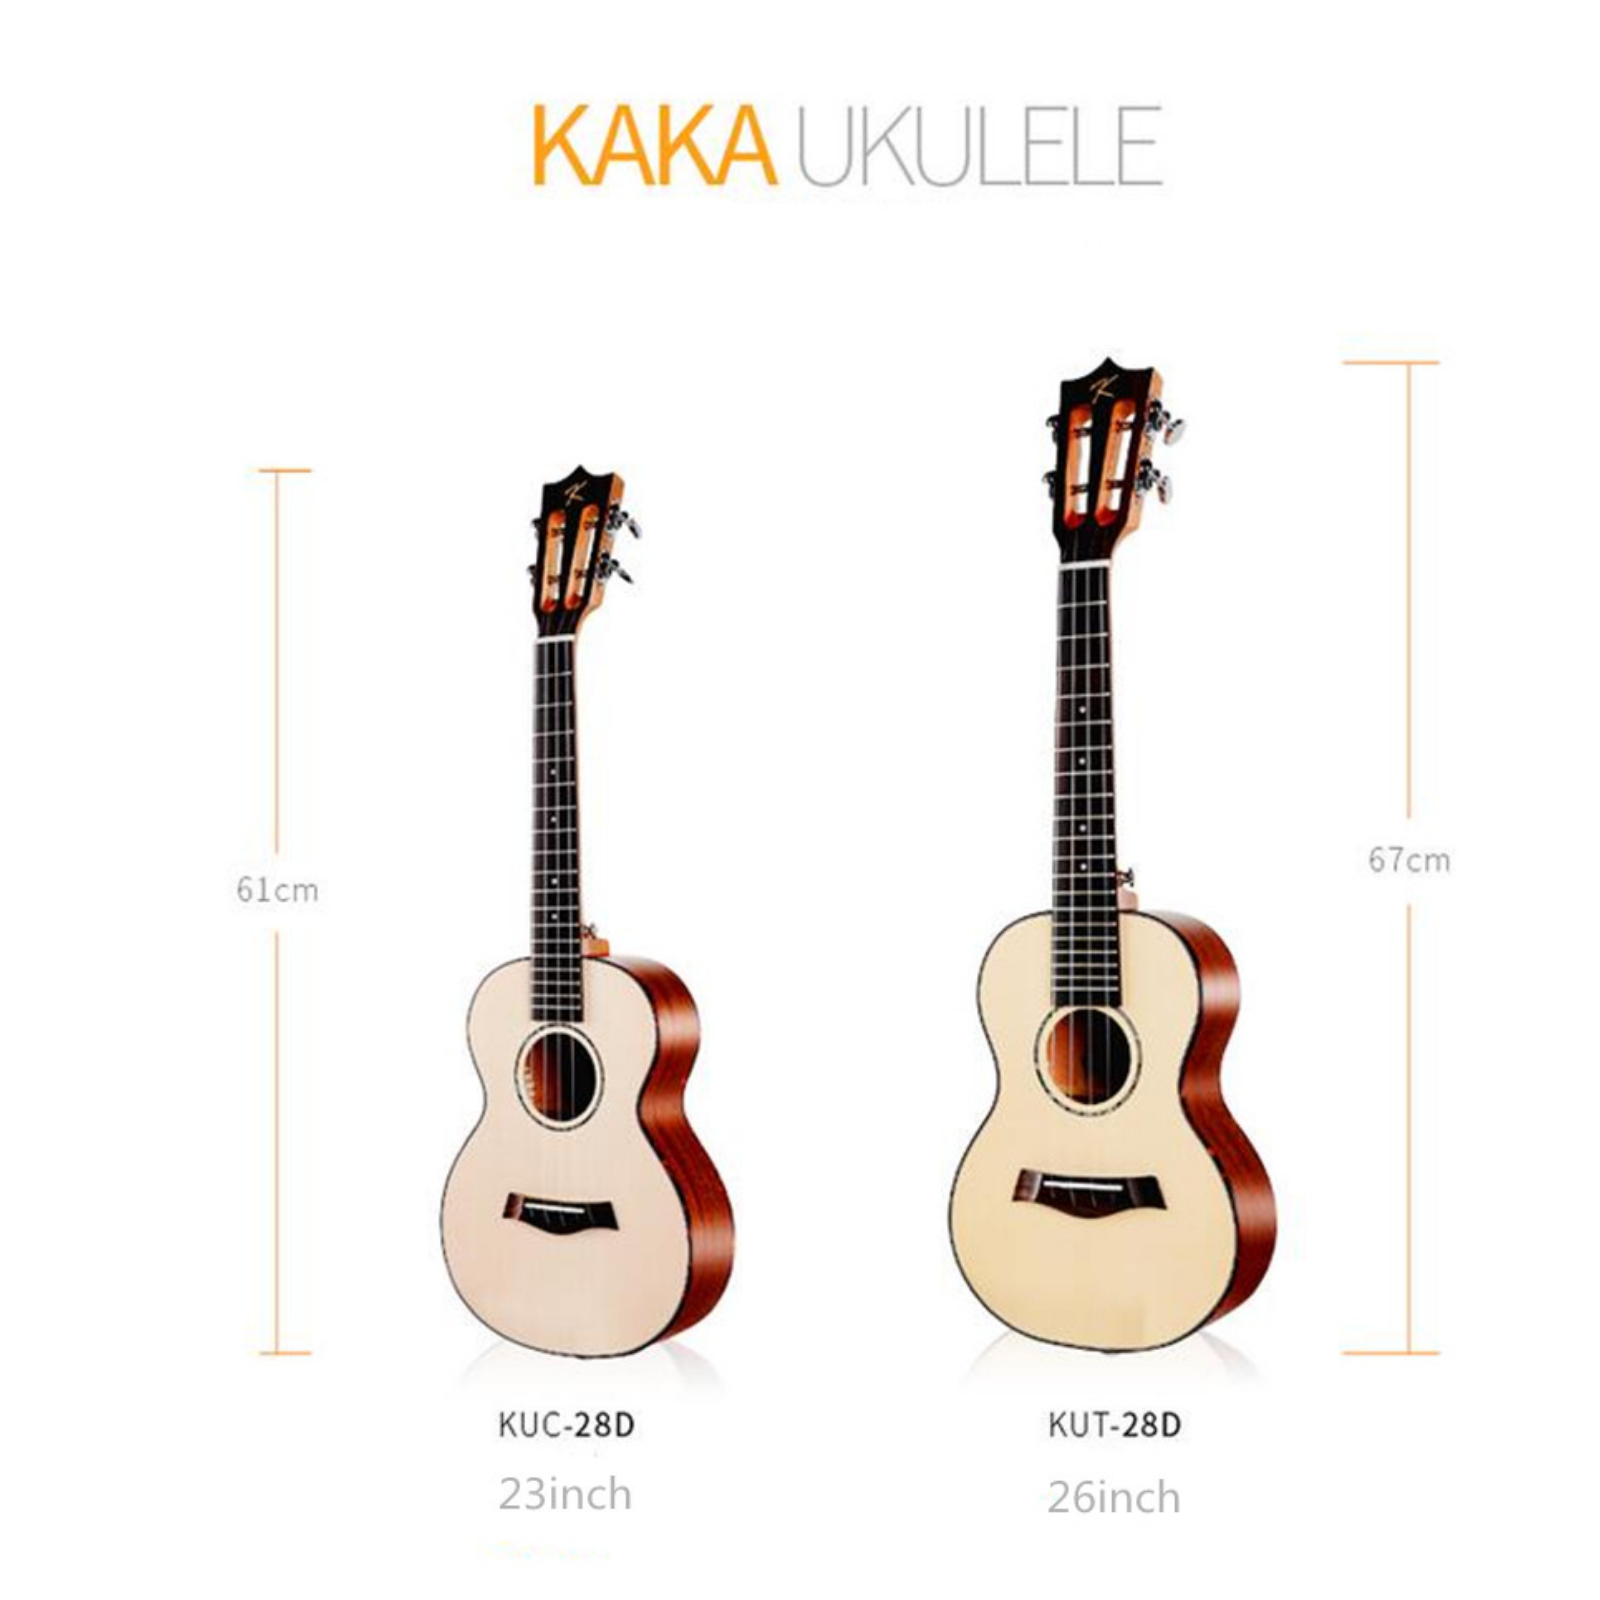 KAKA BY ENYA KUC-28D SOLID TOP CONCERT UKULELE WITH SOFT PADDED BAG MATTE FINISH, KAKA, UKULELE, kaka-ukulele-kuc28d, ZOSO MUSIC SDN BHD